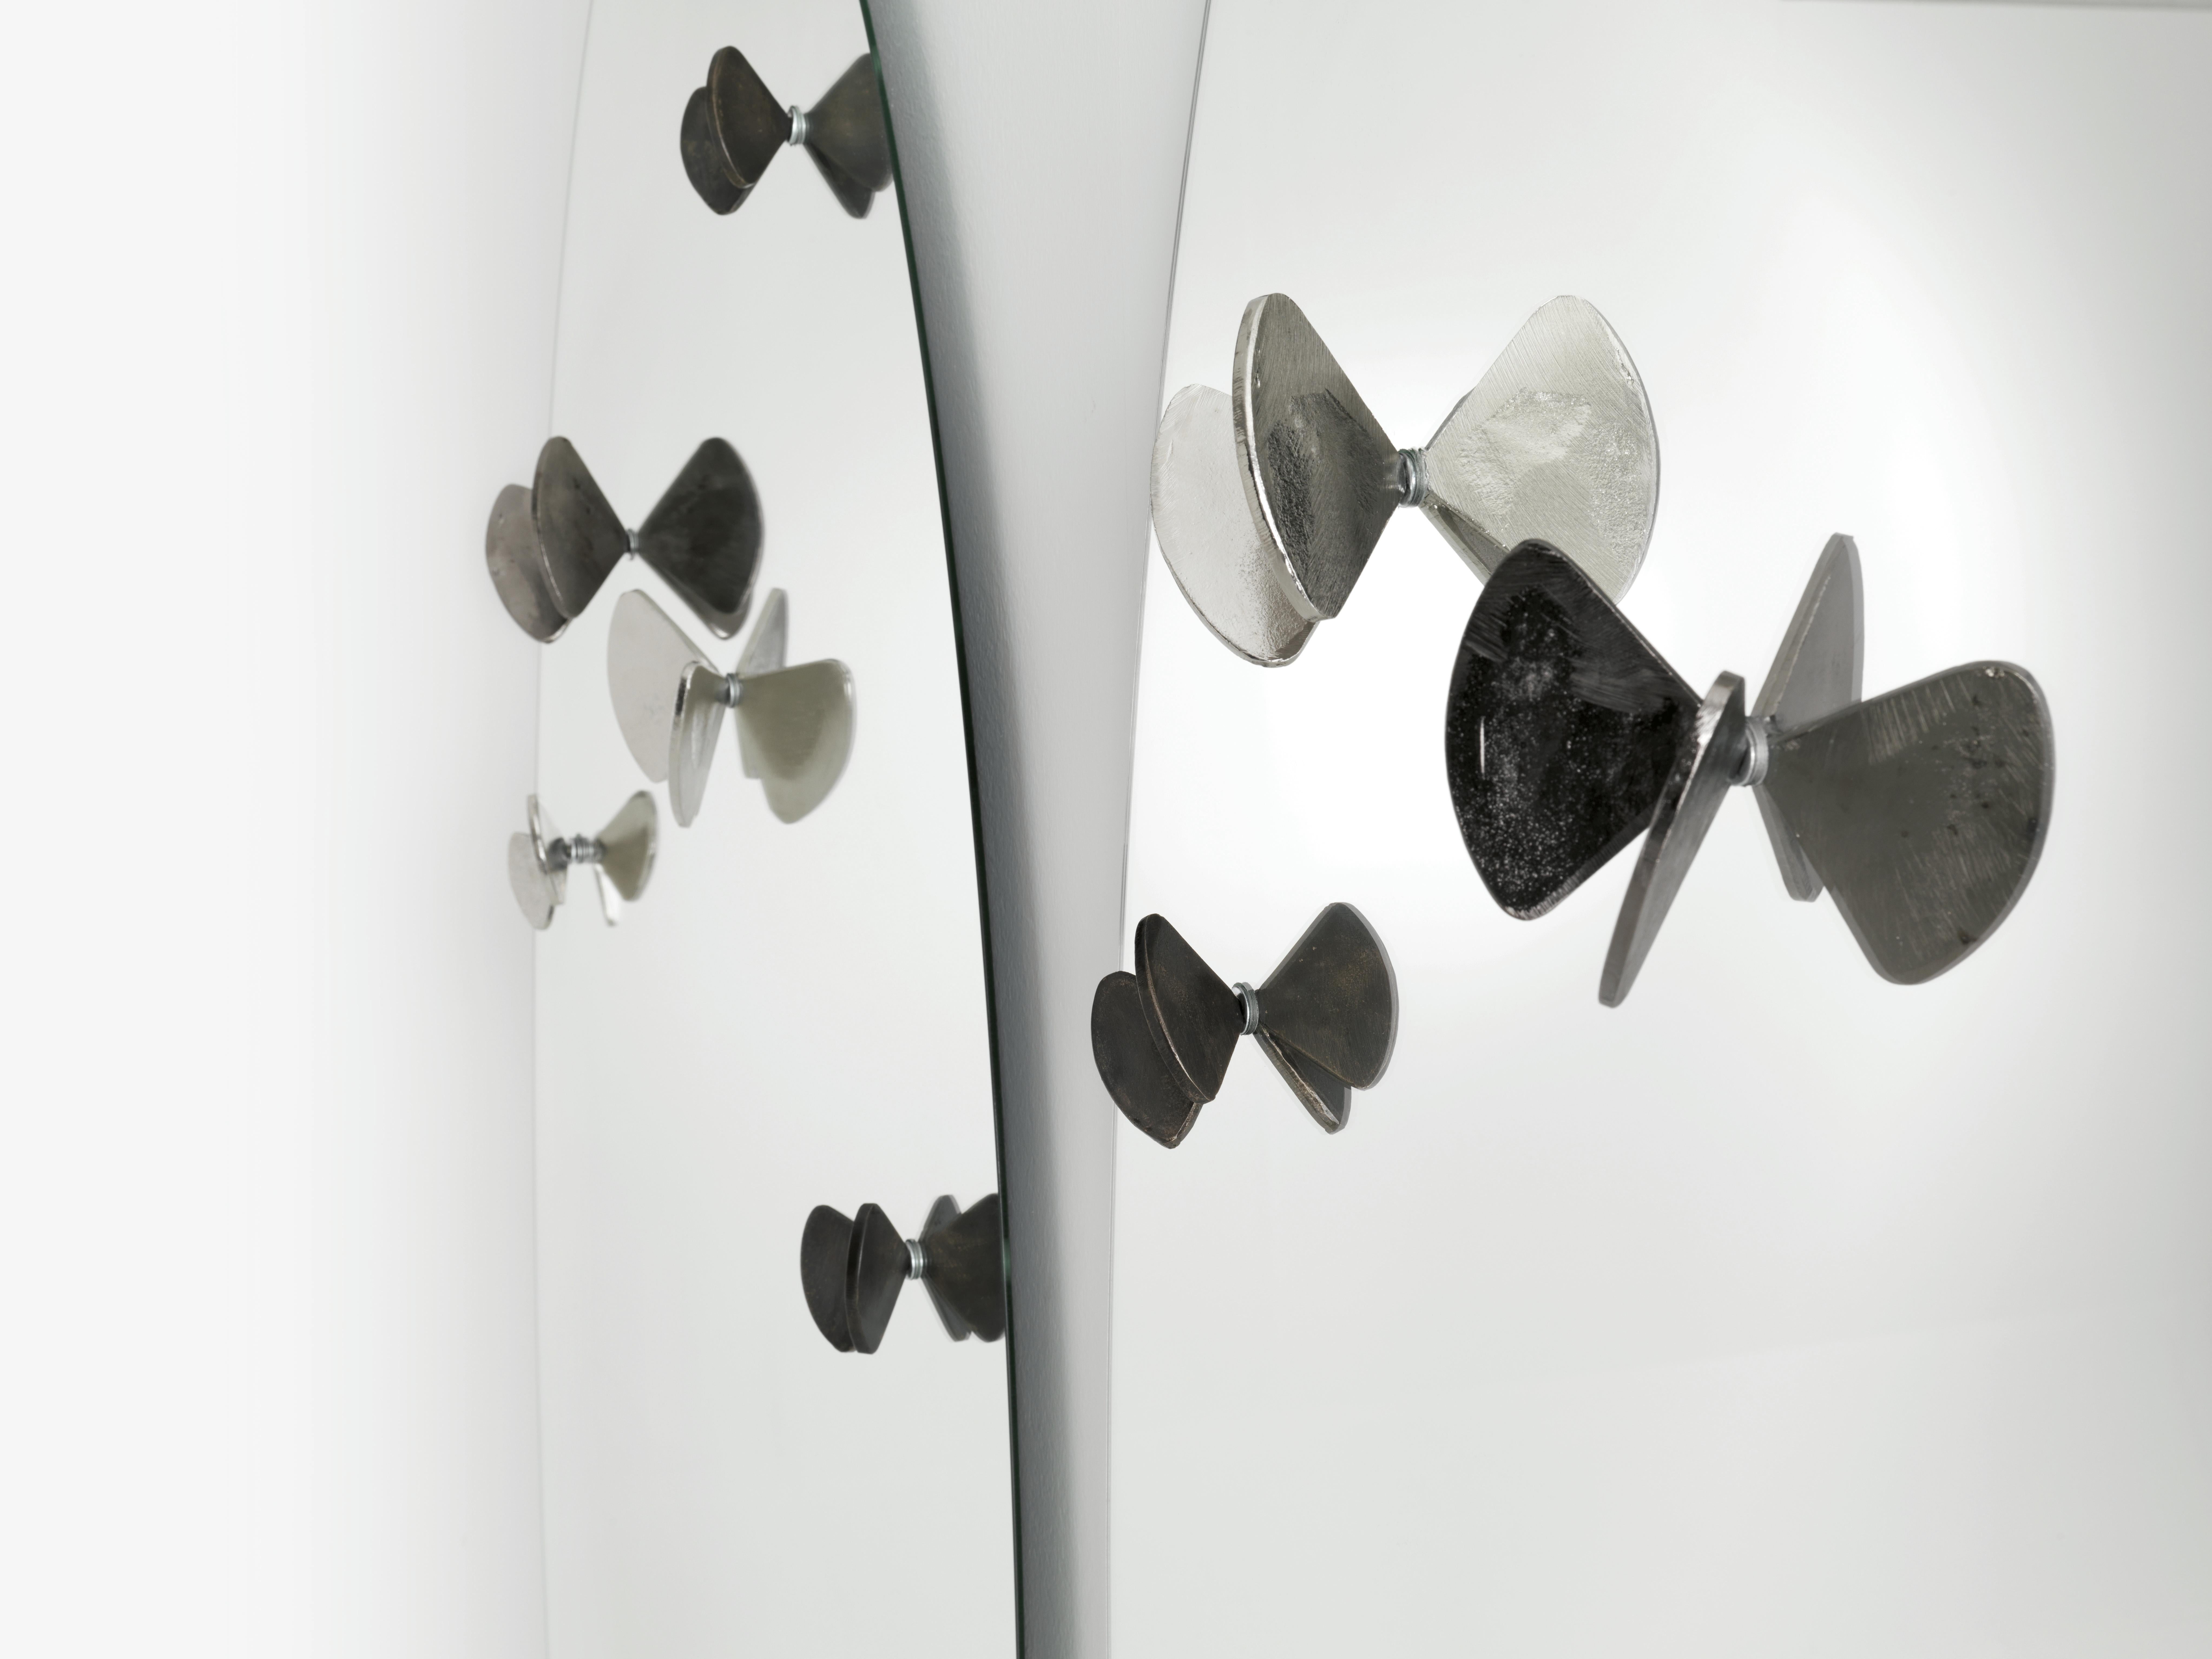 Miroir Bice avec papillons en fonte de laiton conçu par Roberto Mora pour la marque Mogg.  Des papillons supplémentaires peuvent également être achetés avec deux tailles différentes. Les papillons sont disponibles en finition cuivre ou nickel.

Bice